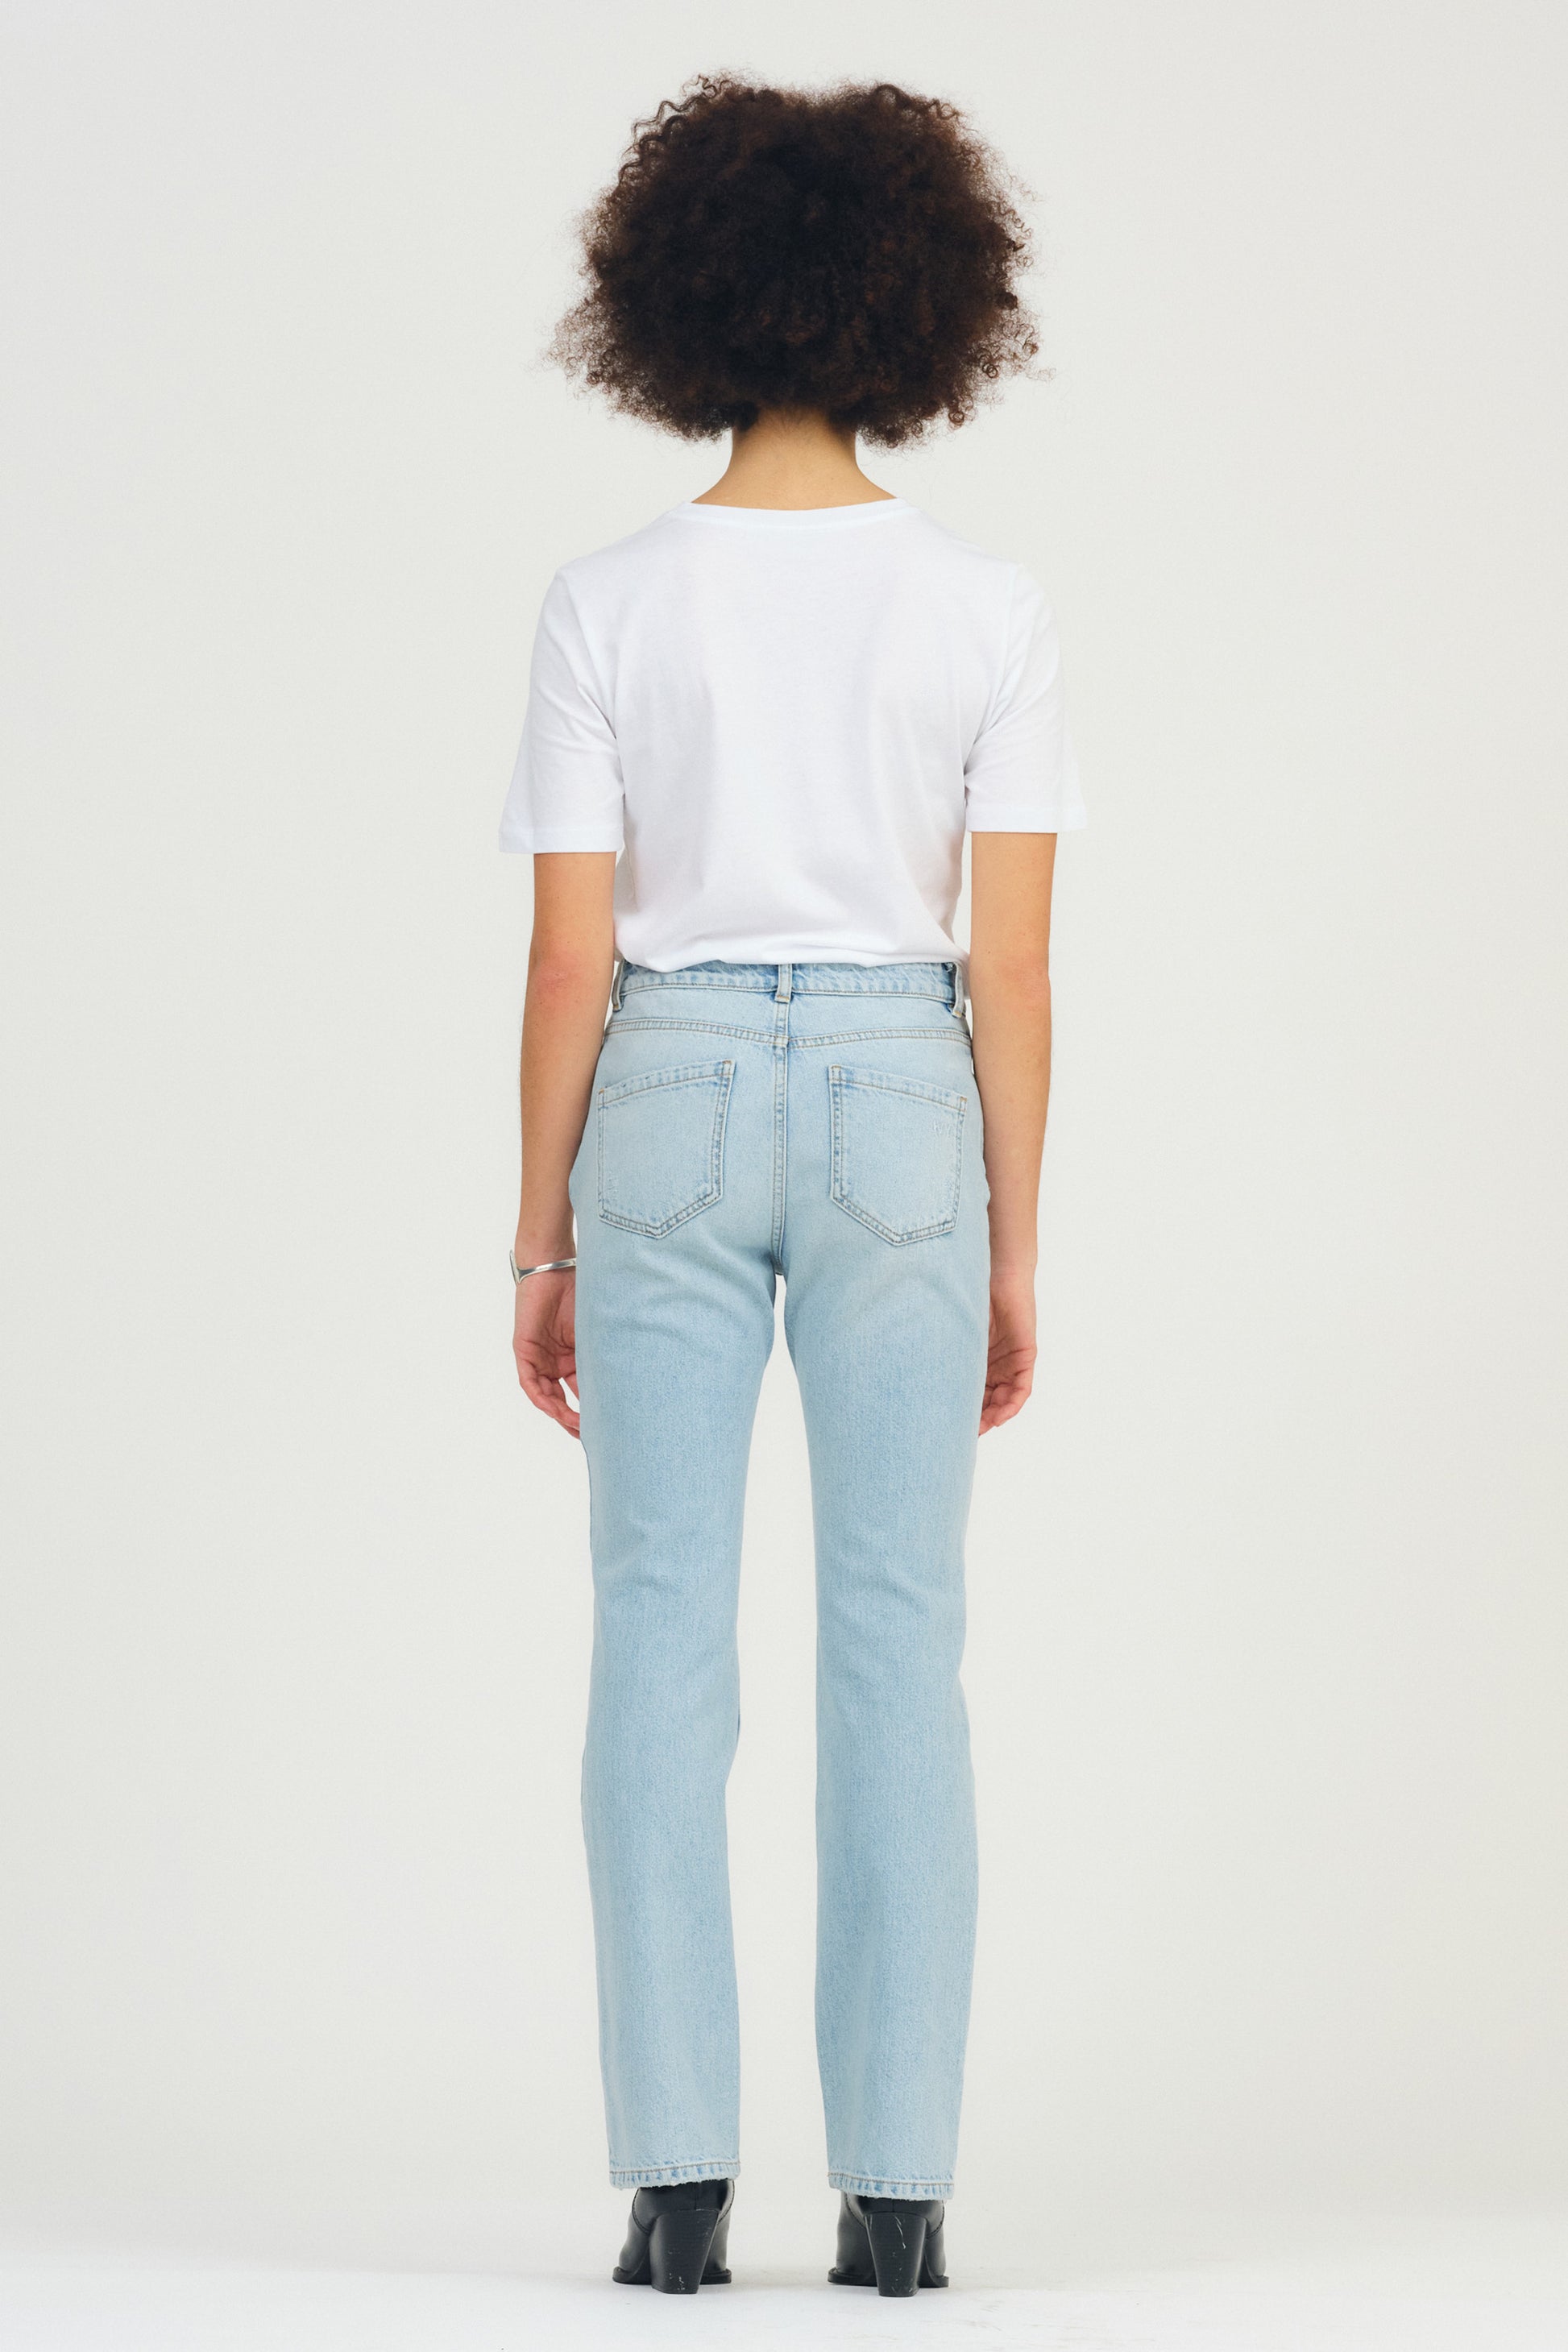 IVY Copenhagen IVY-Lulu Jeans Wash Puerto Banus Jeans & Pants 51 Denim Blue